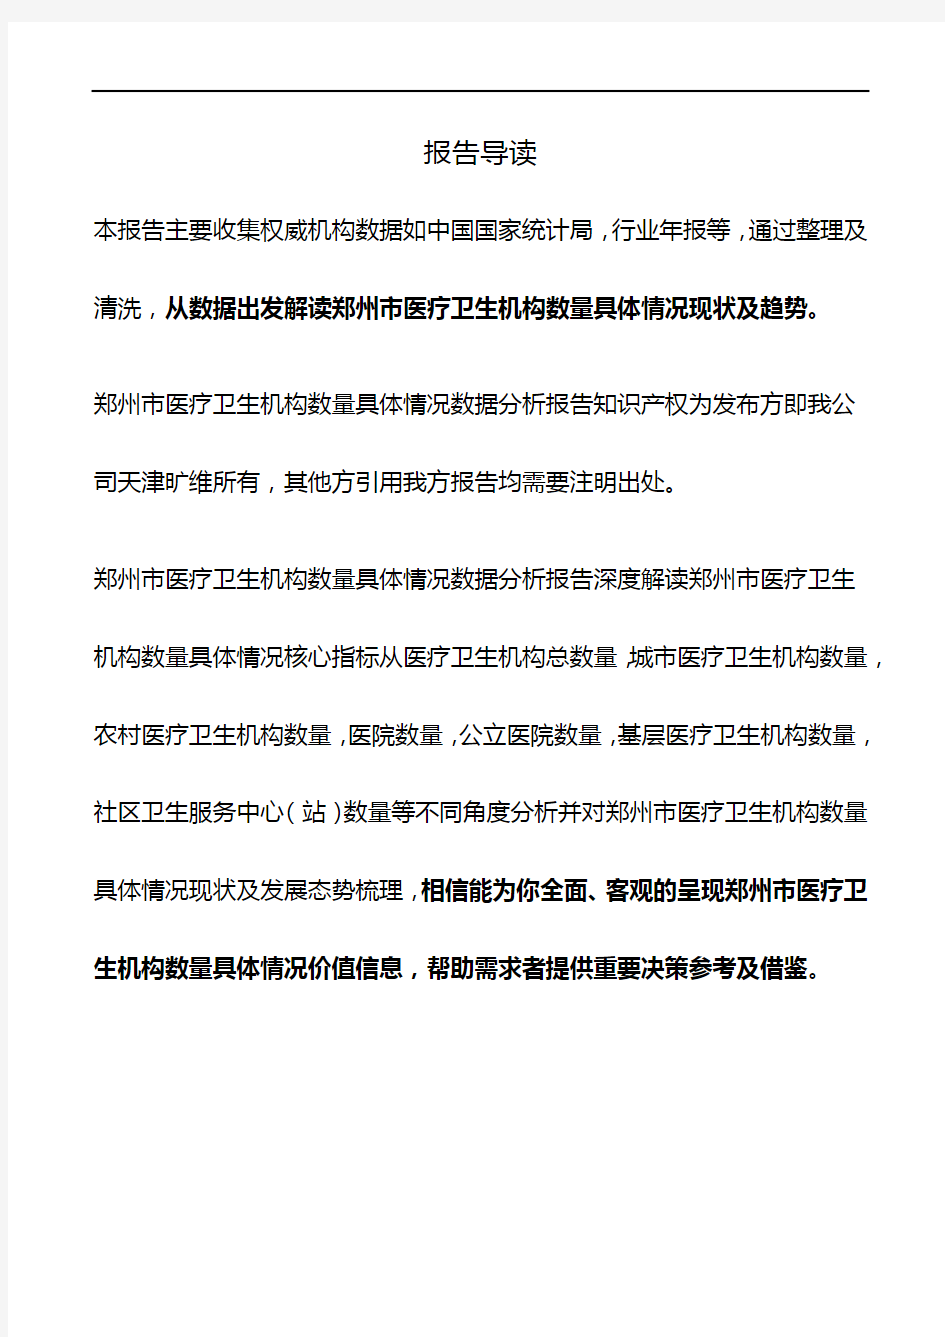 河南省郑州市医疗卫生机构数量具体情况数据分析报告2019版